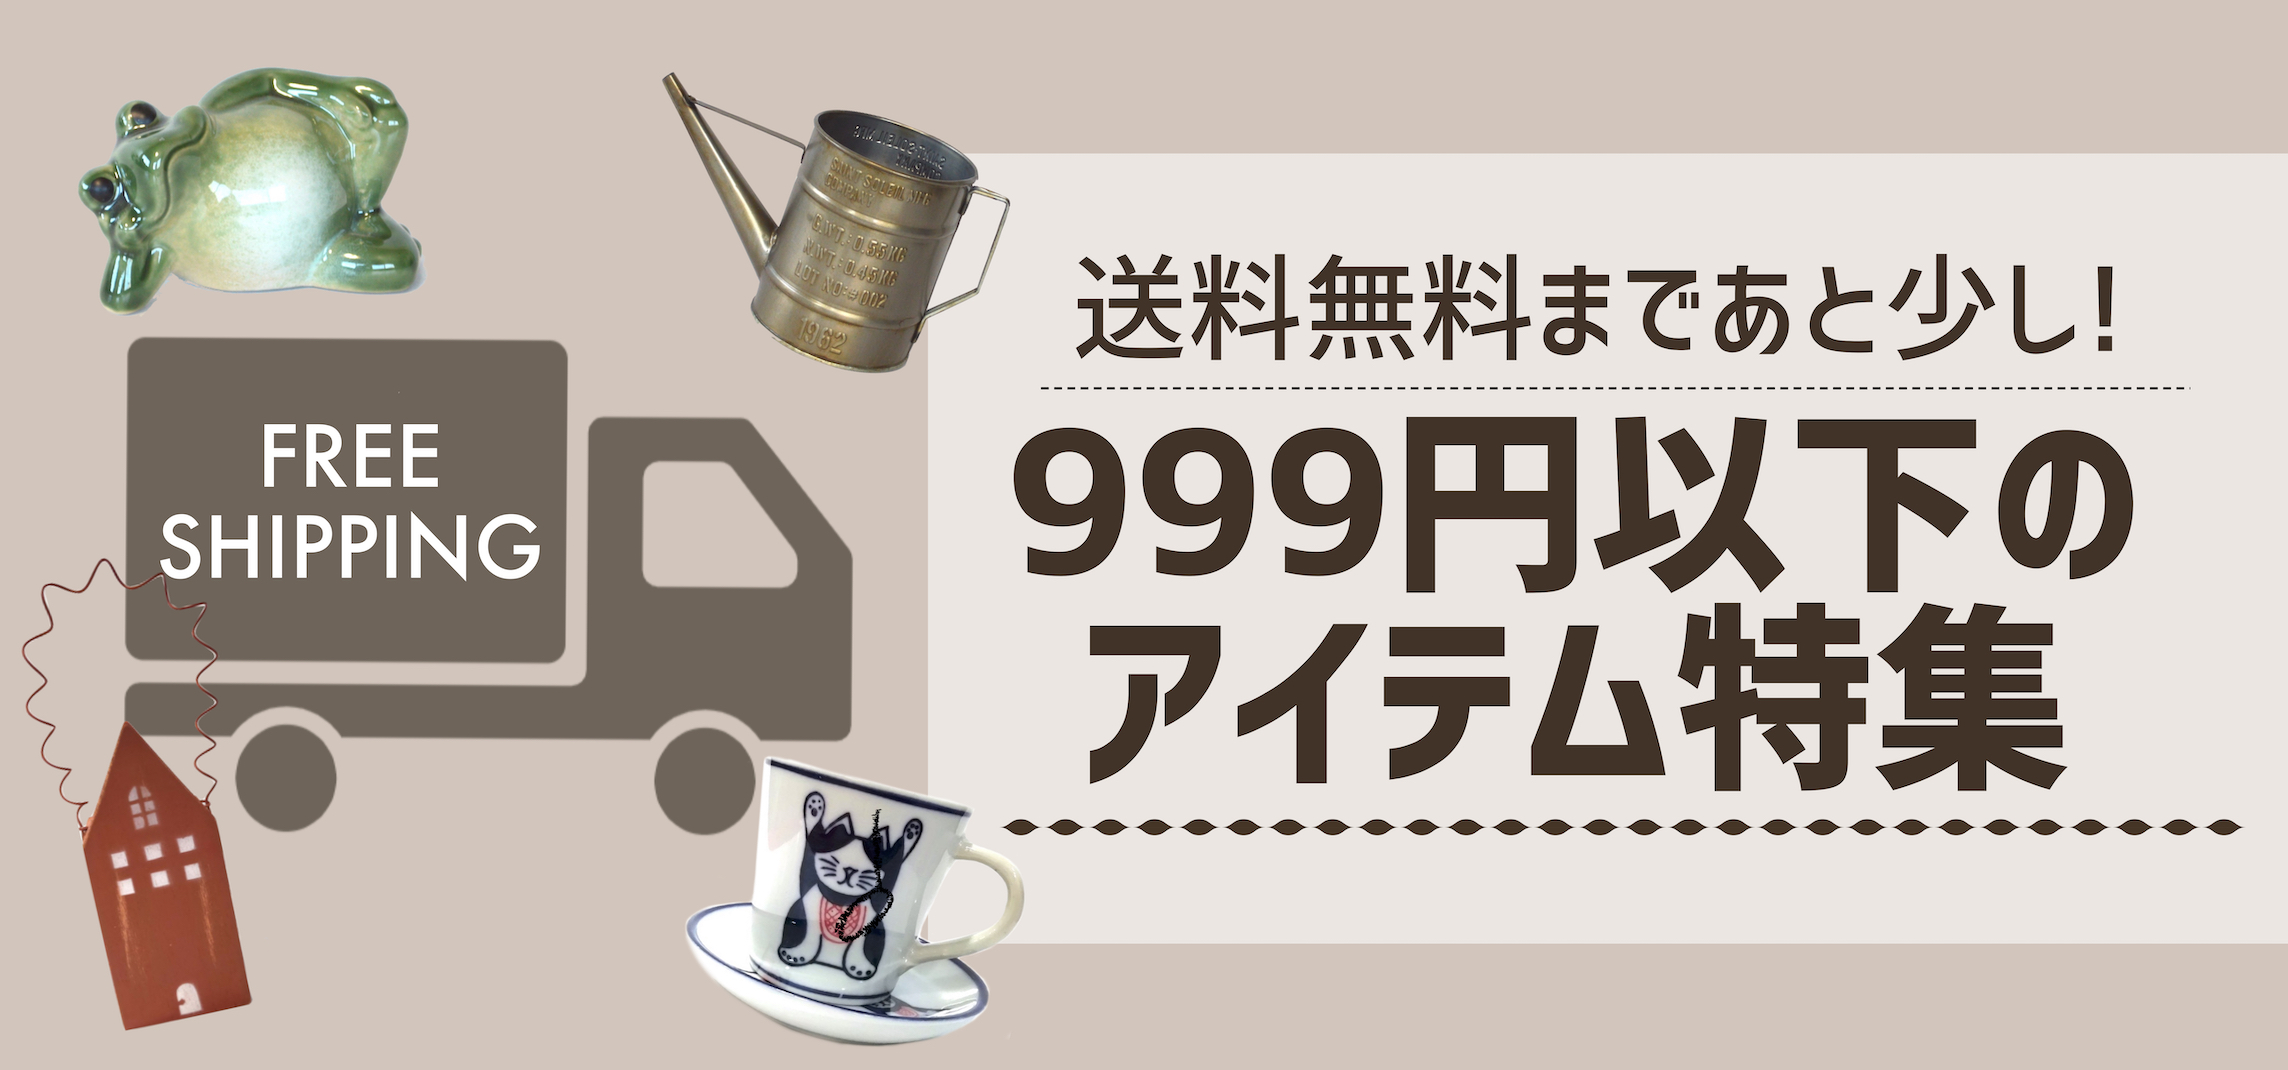 999円以下